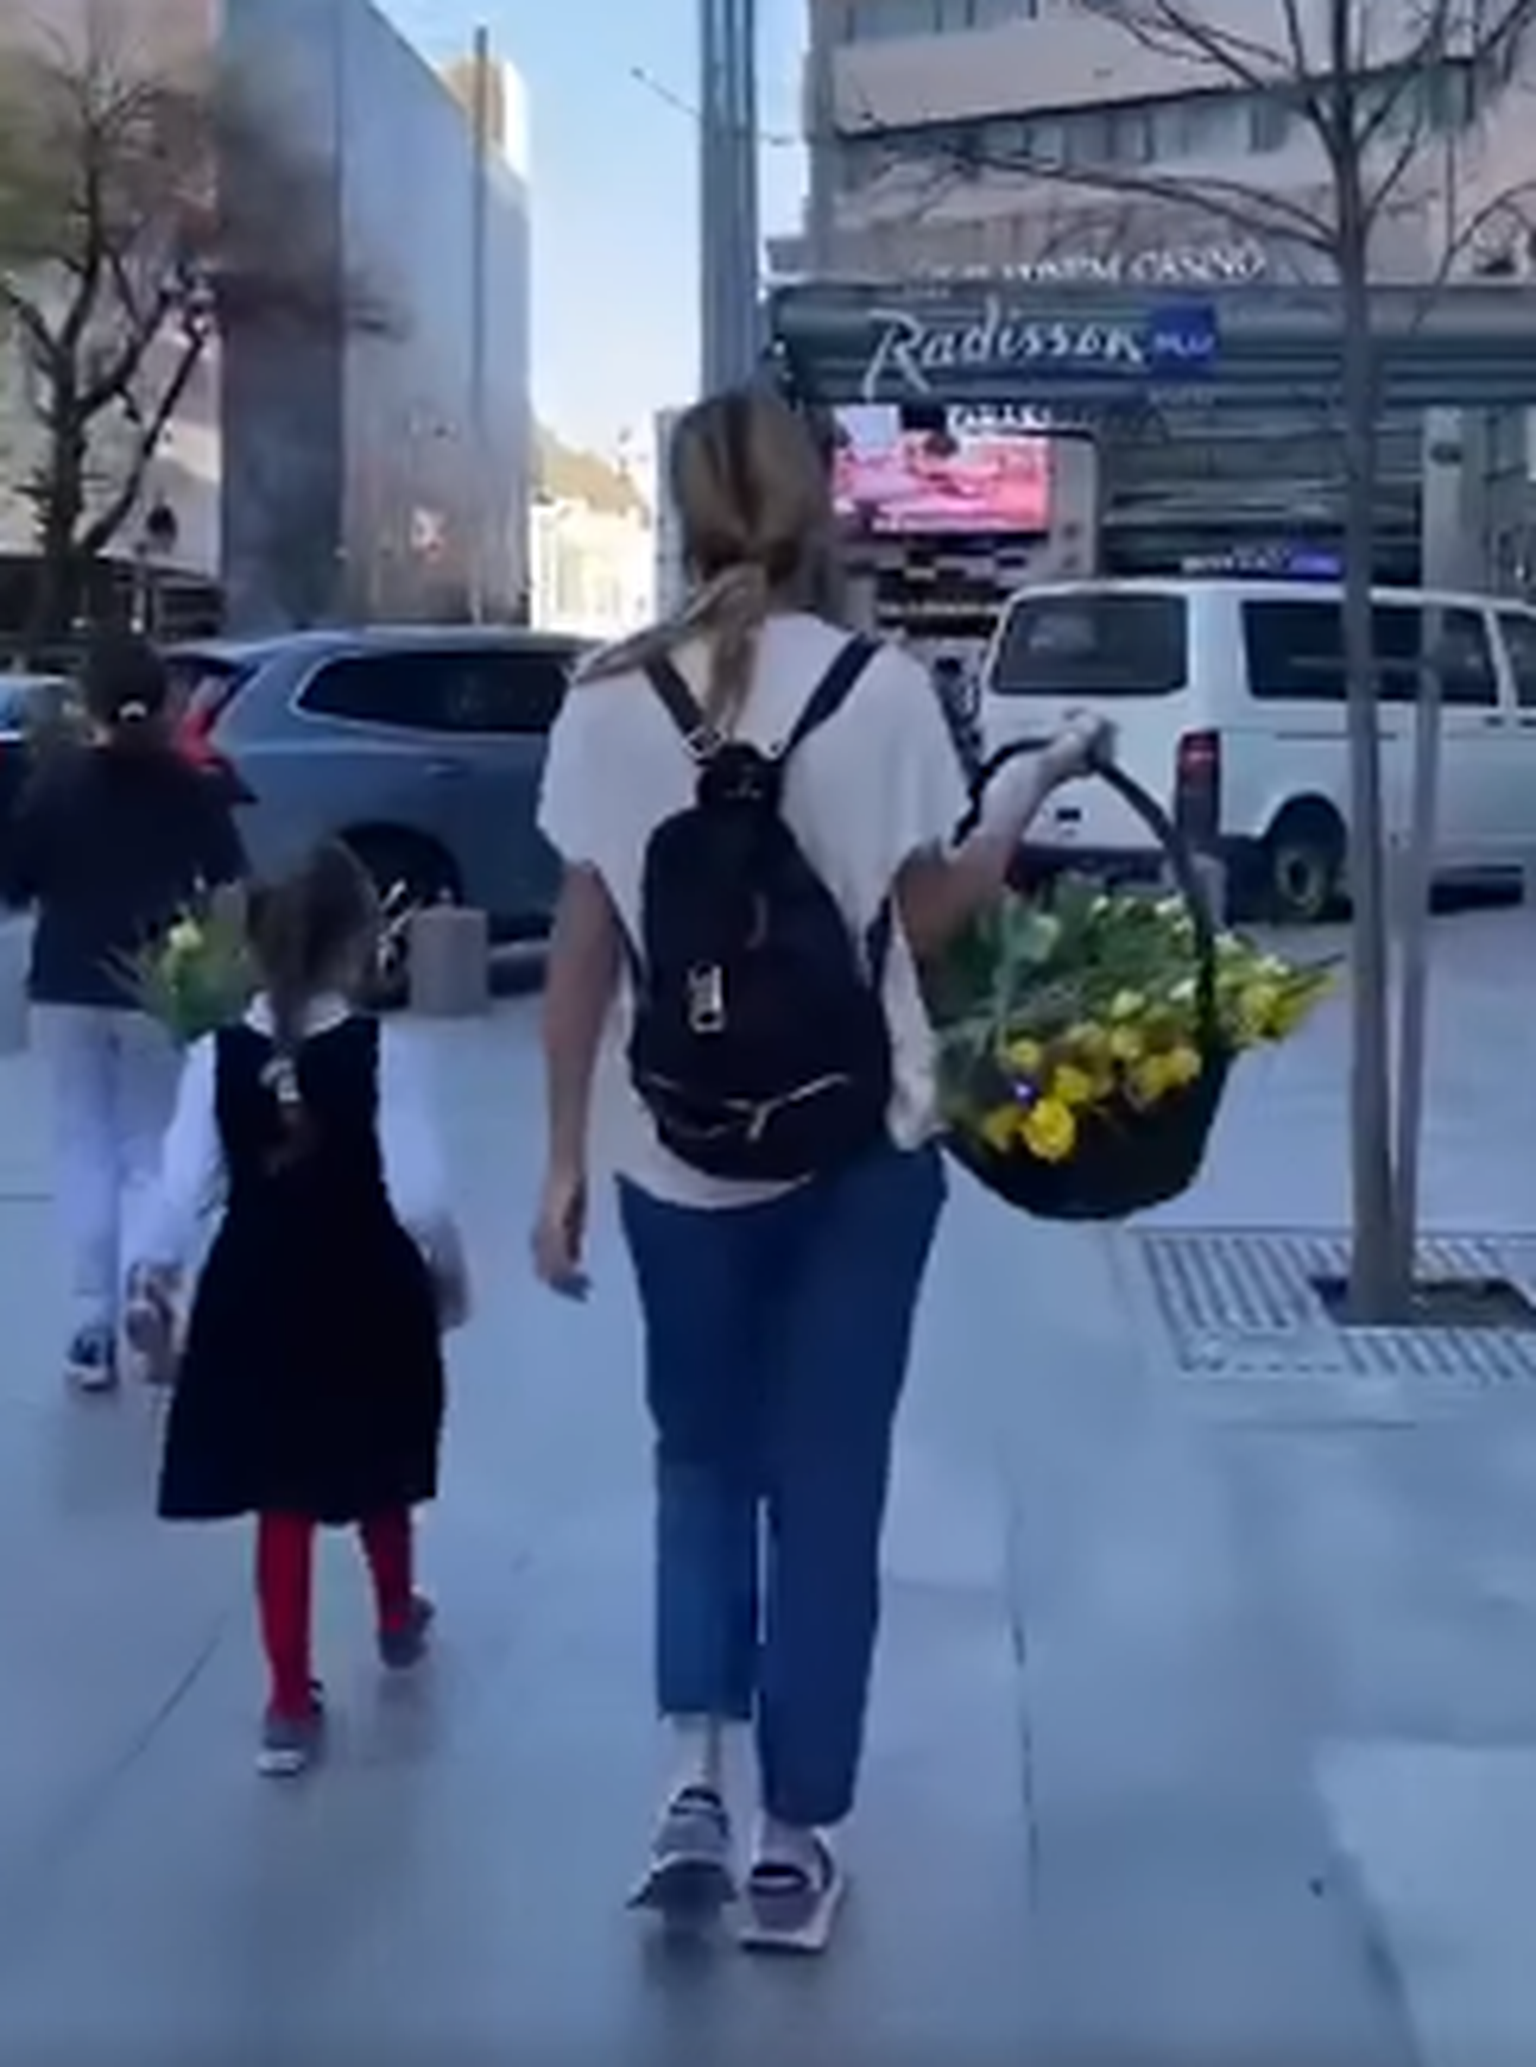 Ukrainlased jagavad lilli tänuks lahke vastuvõtu eest